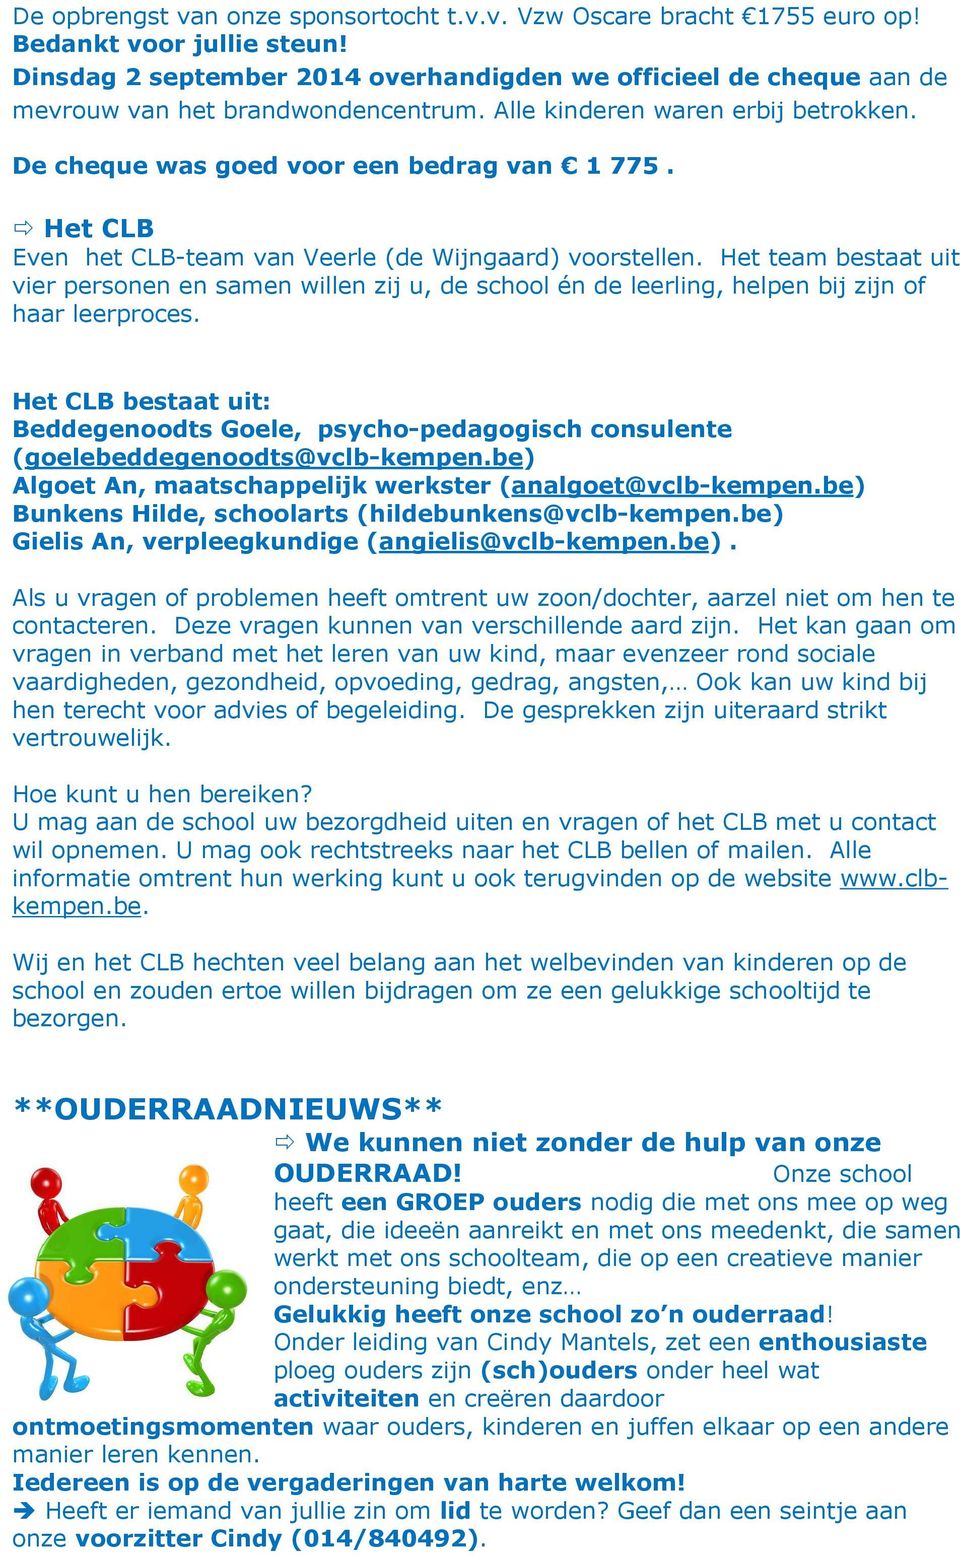 Het CLB Even het CLB-team van Veerle (de Wijngaard) voorstellen. Het team bestaat uit vier personen en samen willen zij u, de school én de leerling, helpen bij zijn of haar leerproces.